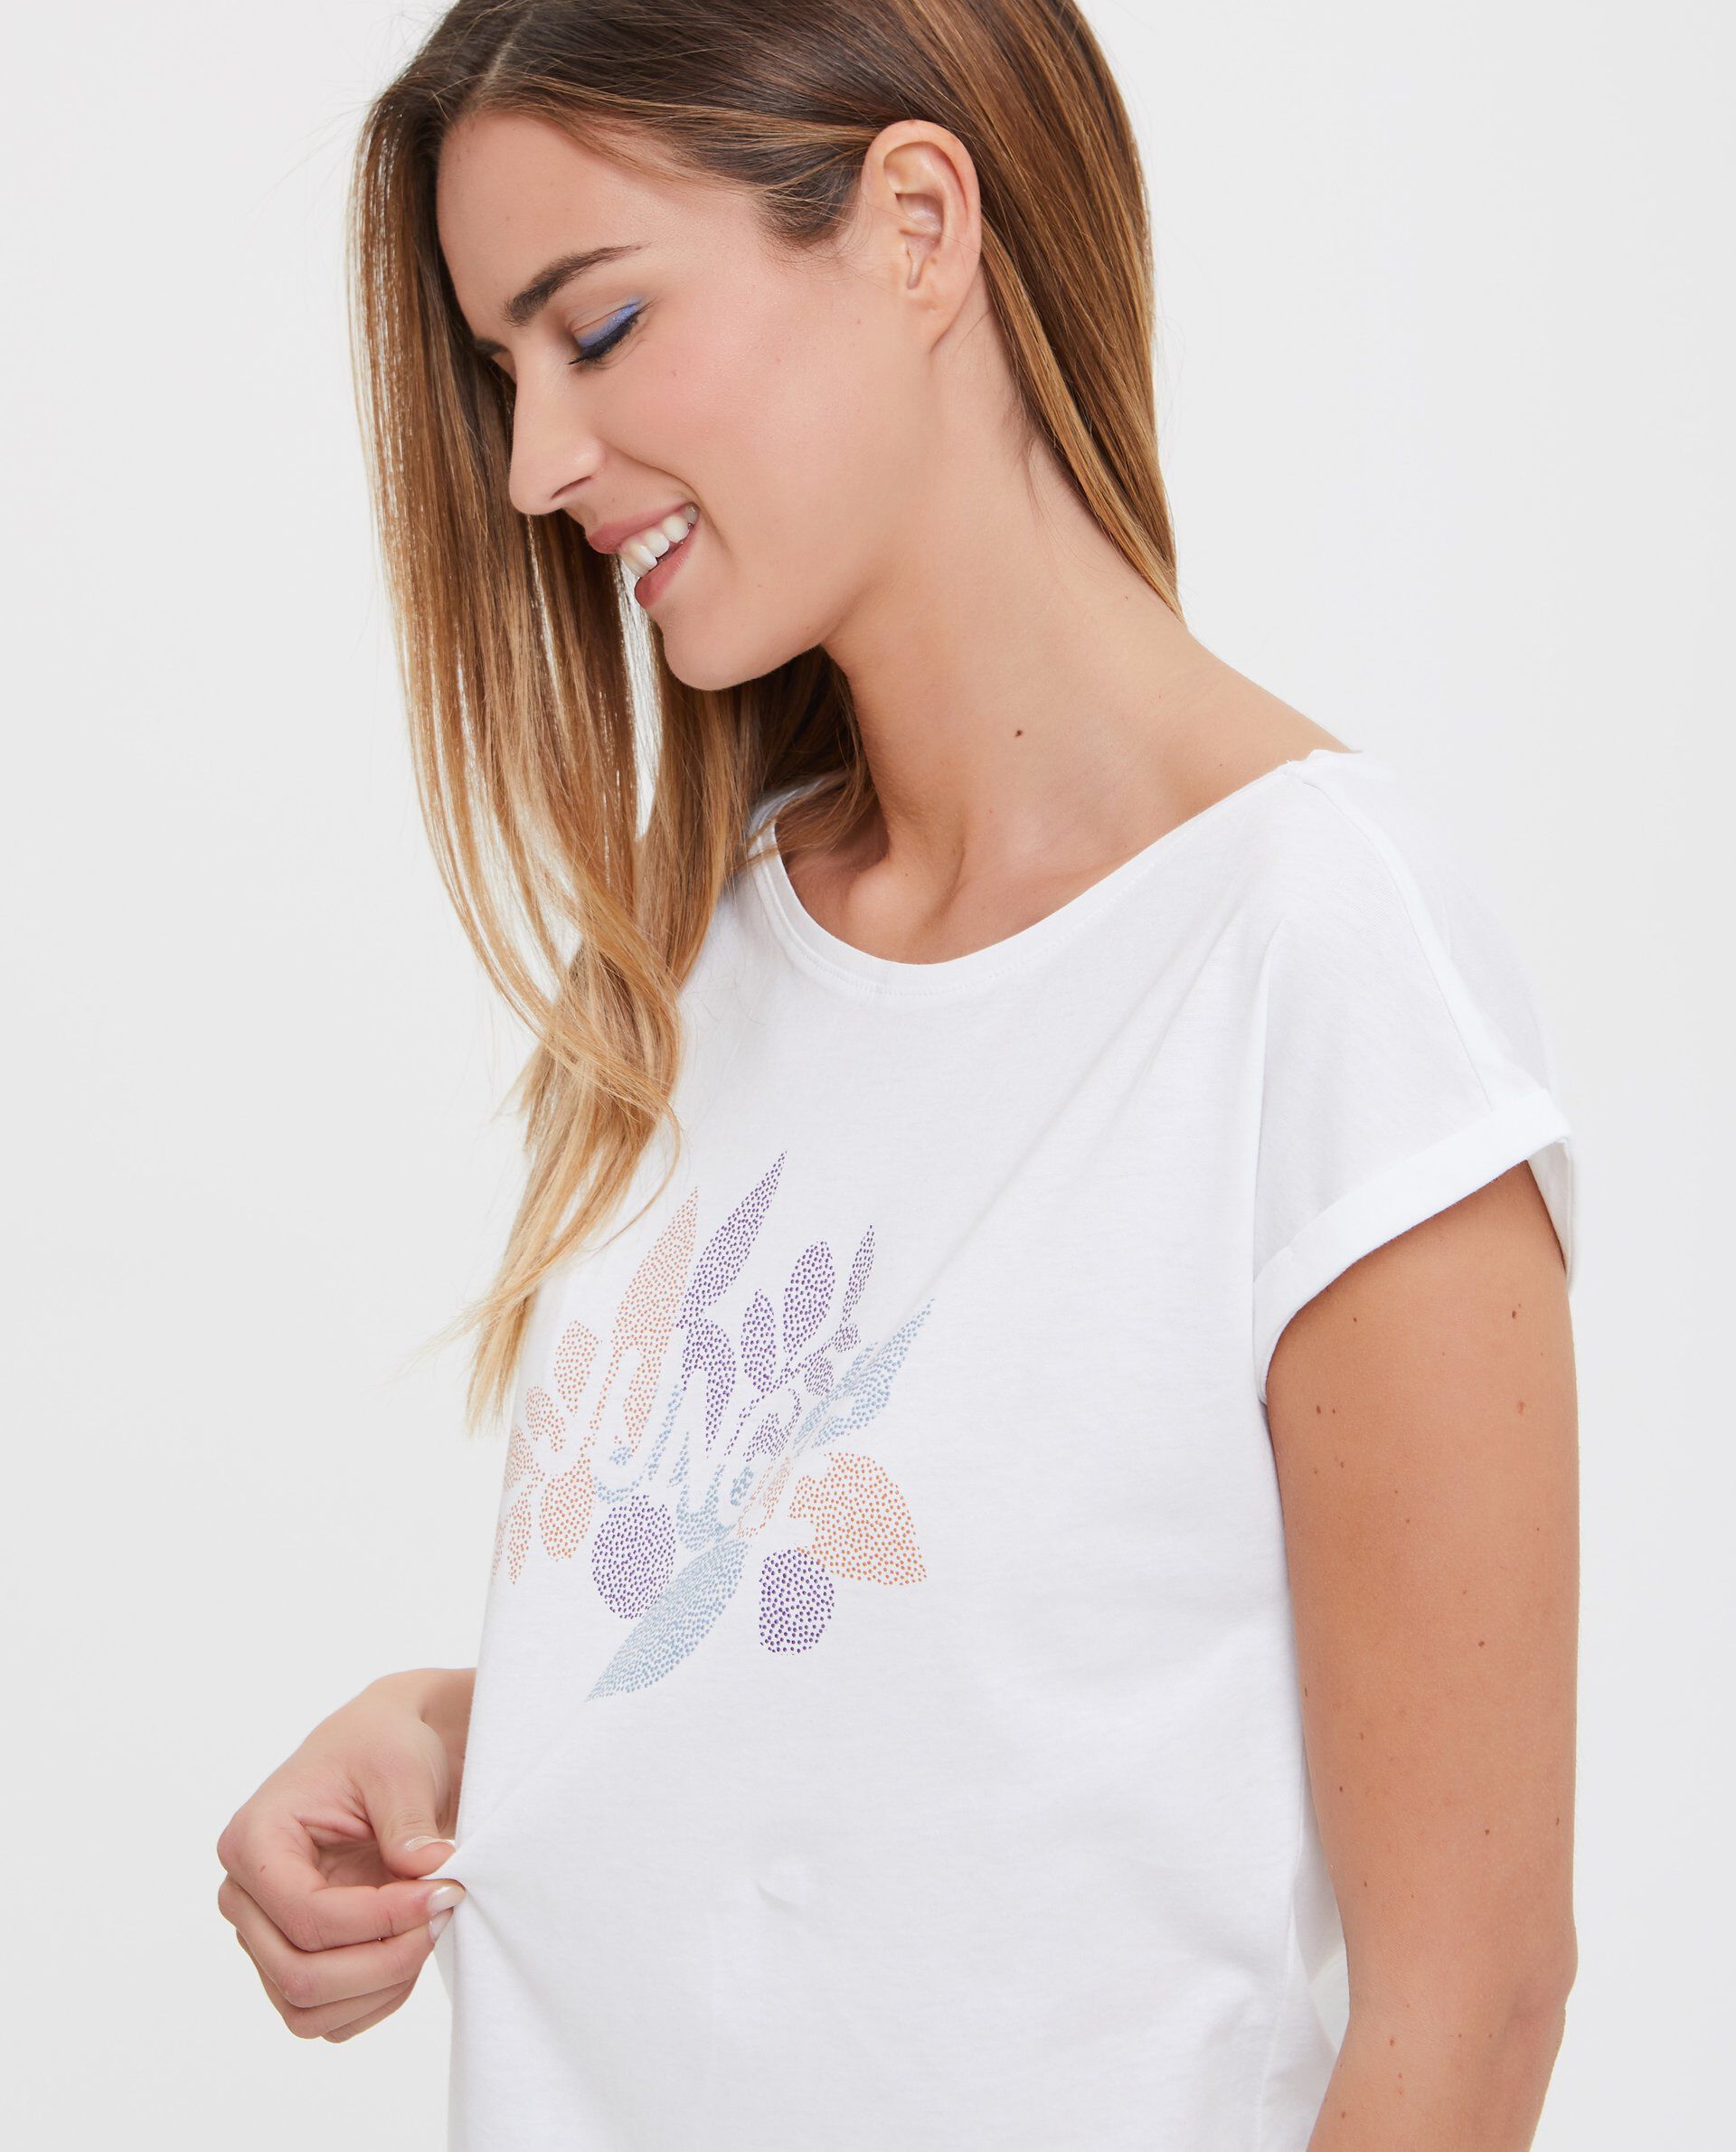 T-shirt in puro cotone con lettering e disegno donna